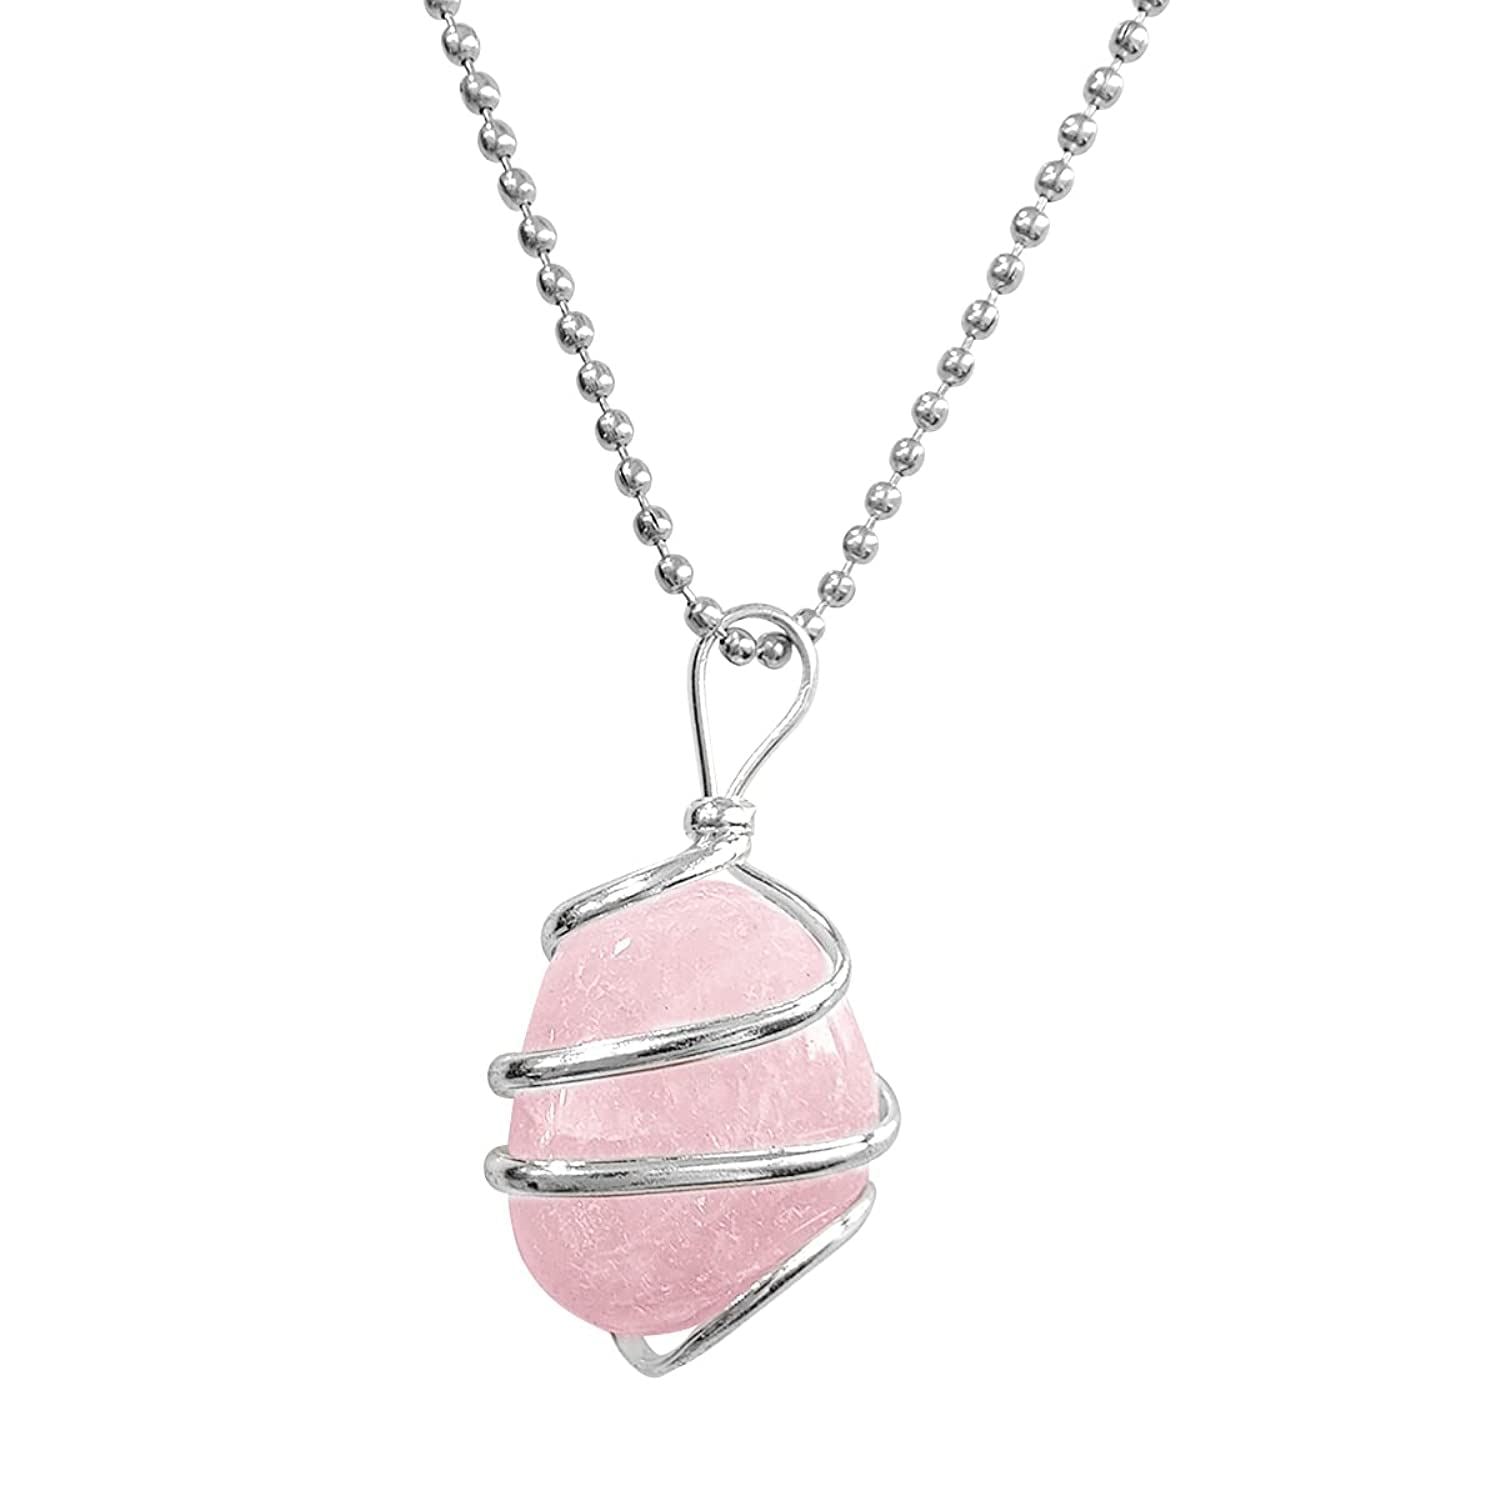 crystal-pendant-tumble-stone-wrapped-rose-quartz